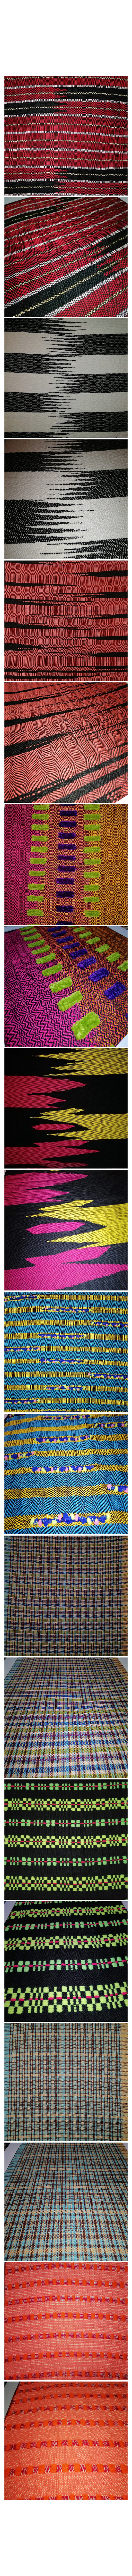 dobby weaving Woven loom weave textile pattern design onloomweave weaving design